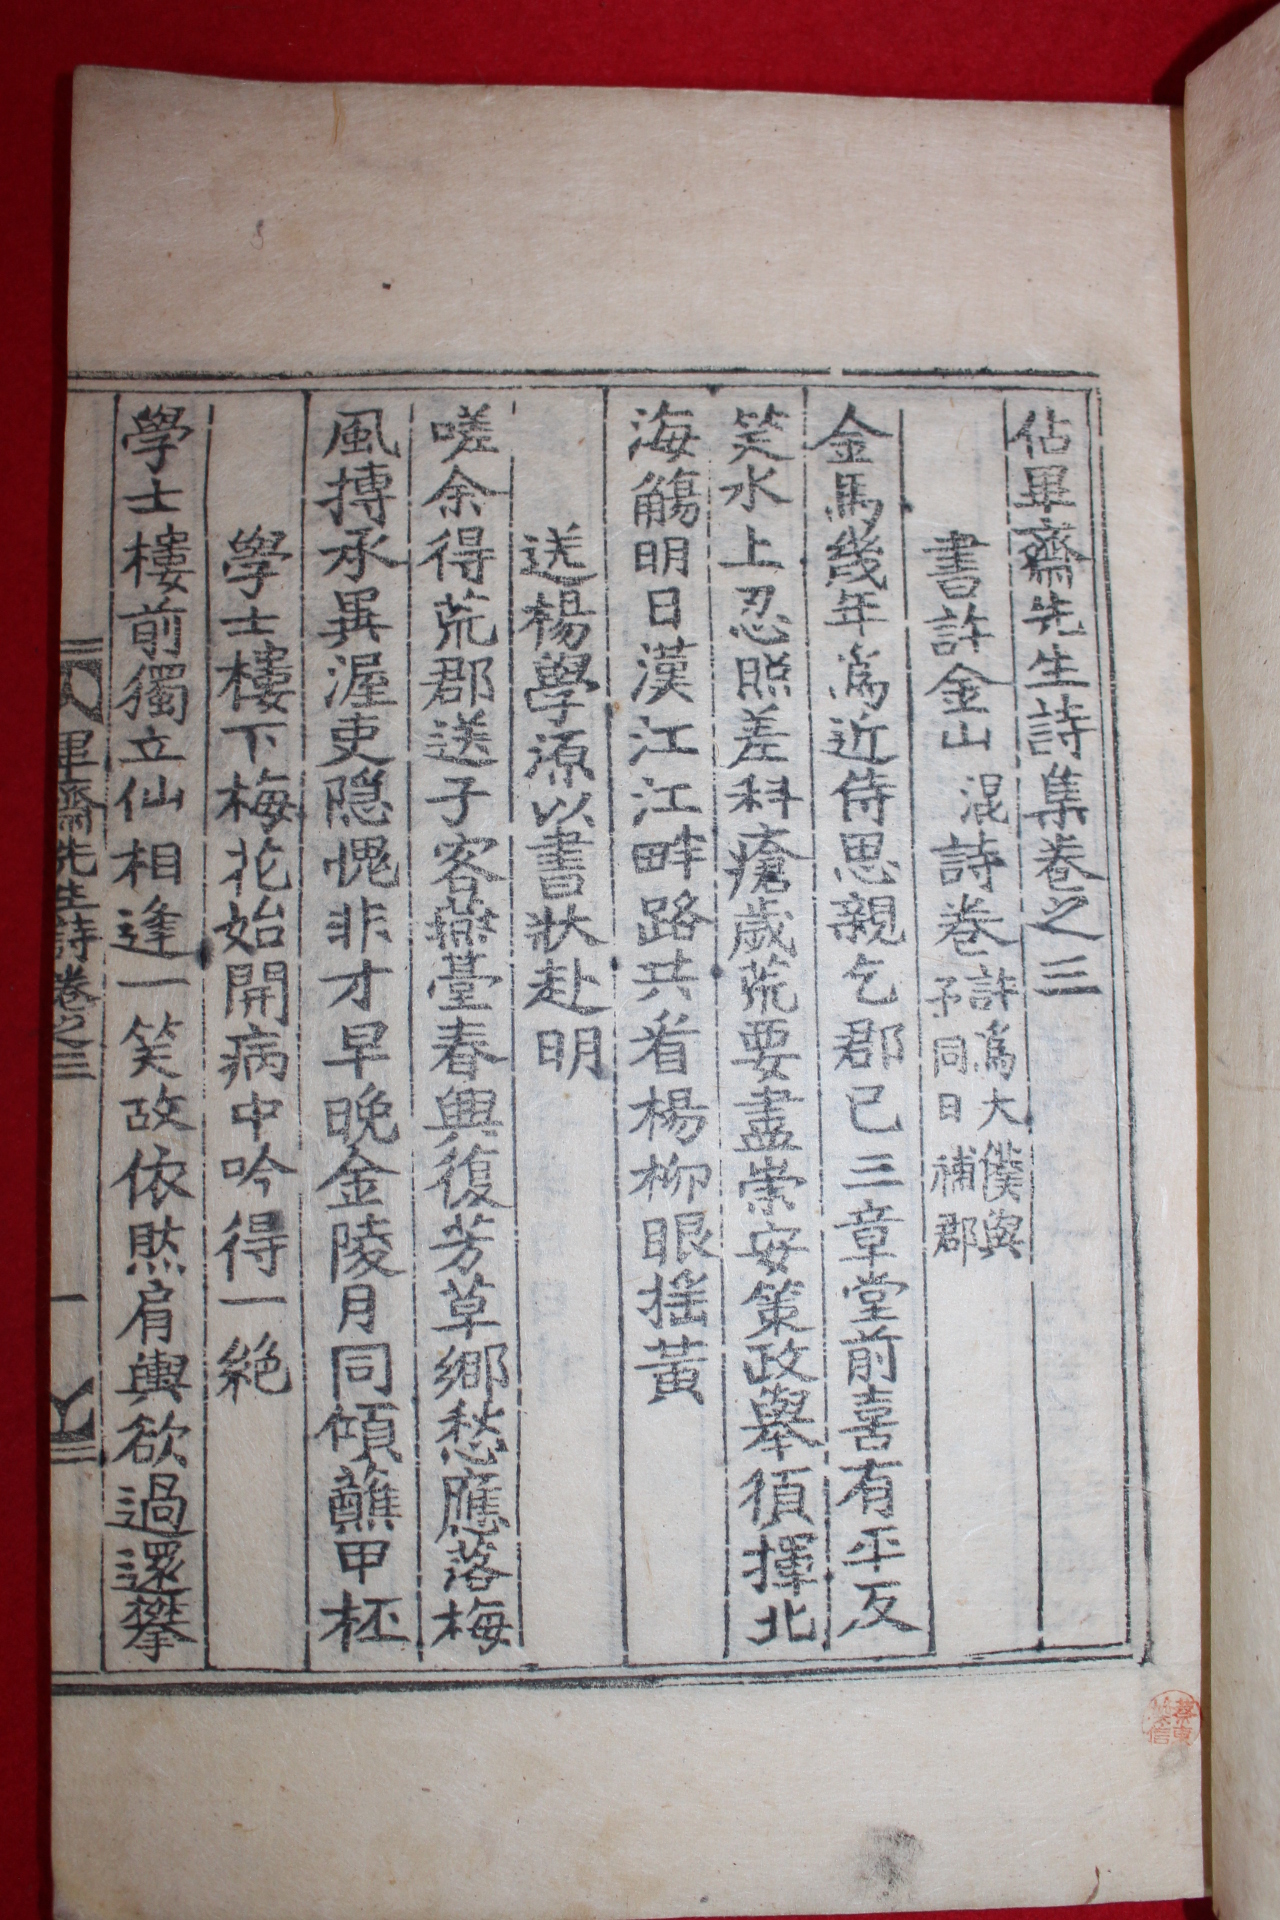 1892년 목판본 김종직(金宗直) 점필재선생문집,점필재선생시집,년보 8책완질